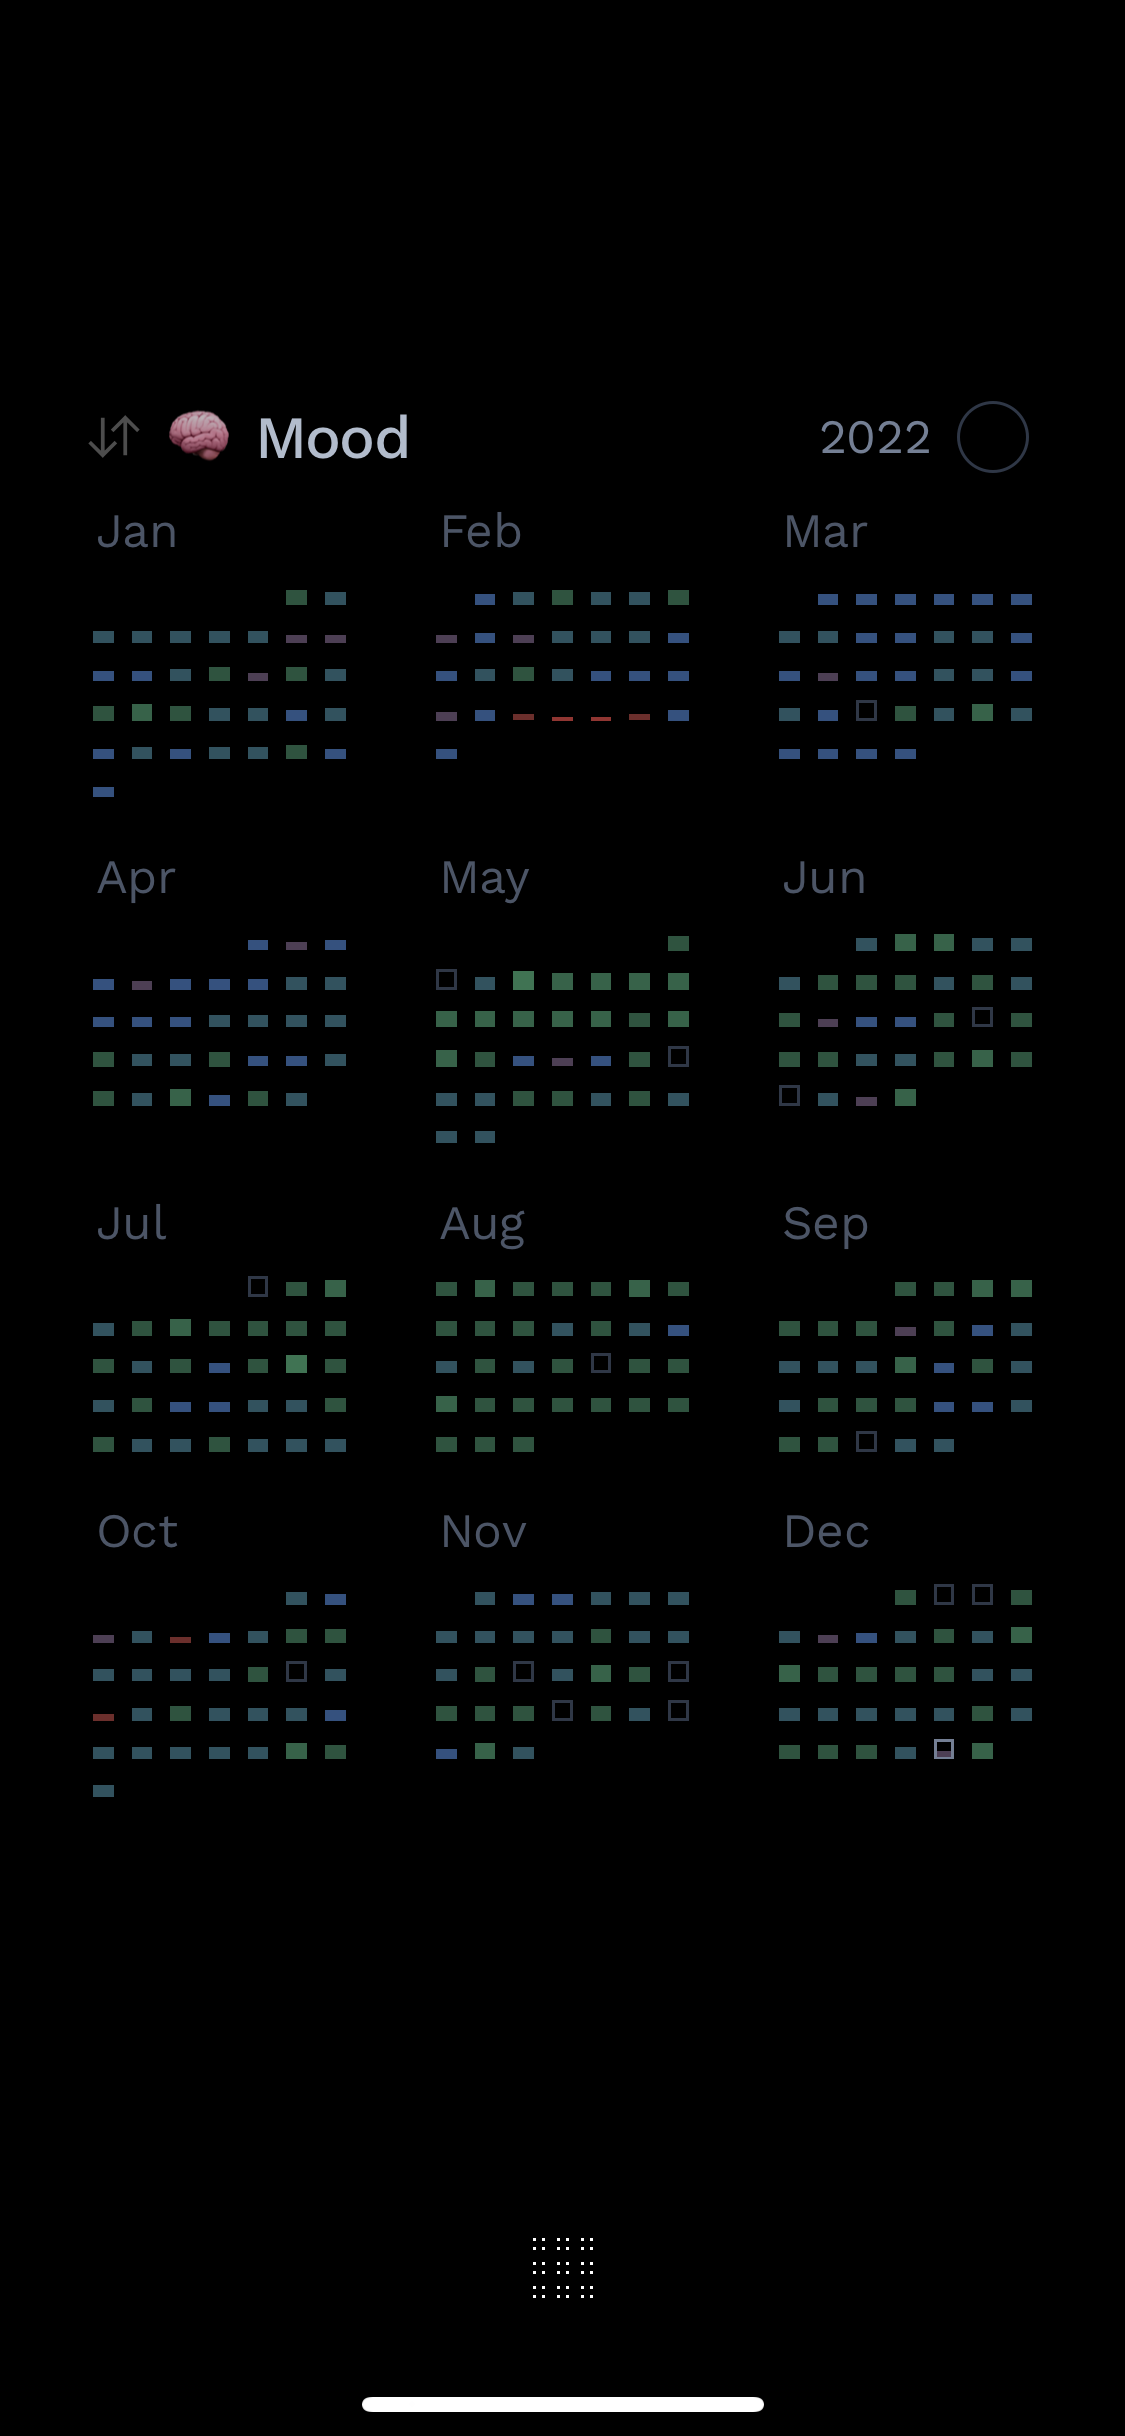 Screenshot of Blocks app showing mood habit throughout 2022